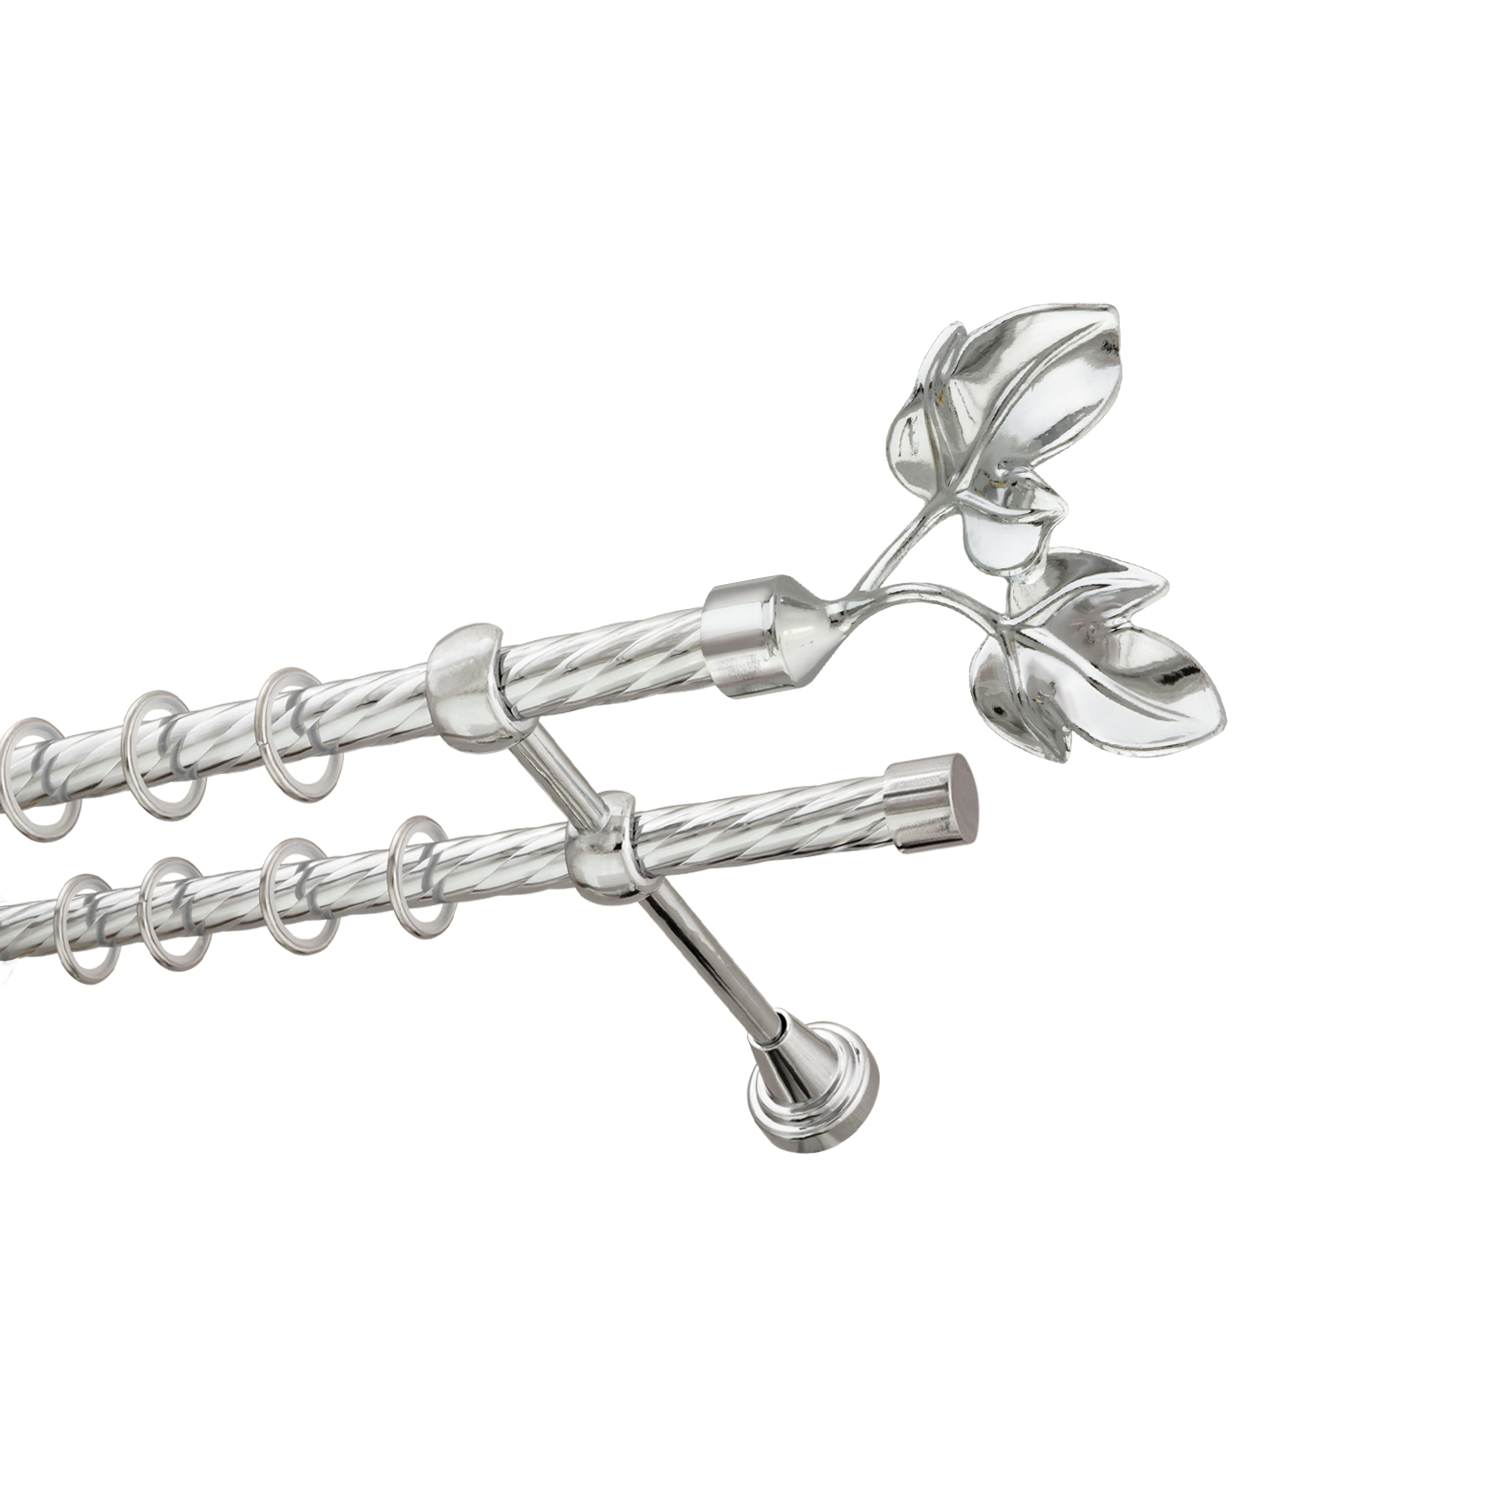 Металлический карниз для штор Листья, двухрядный 16/16 мм, серебро, витая штанга, длина 180 см - фото Wikidecor.ru